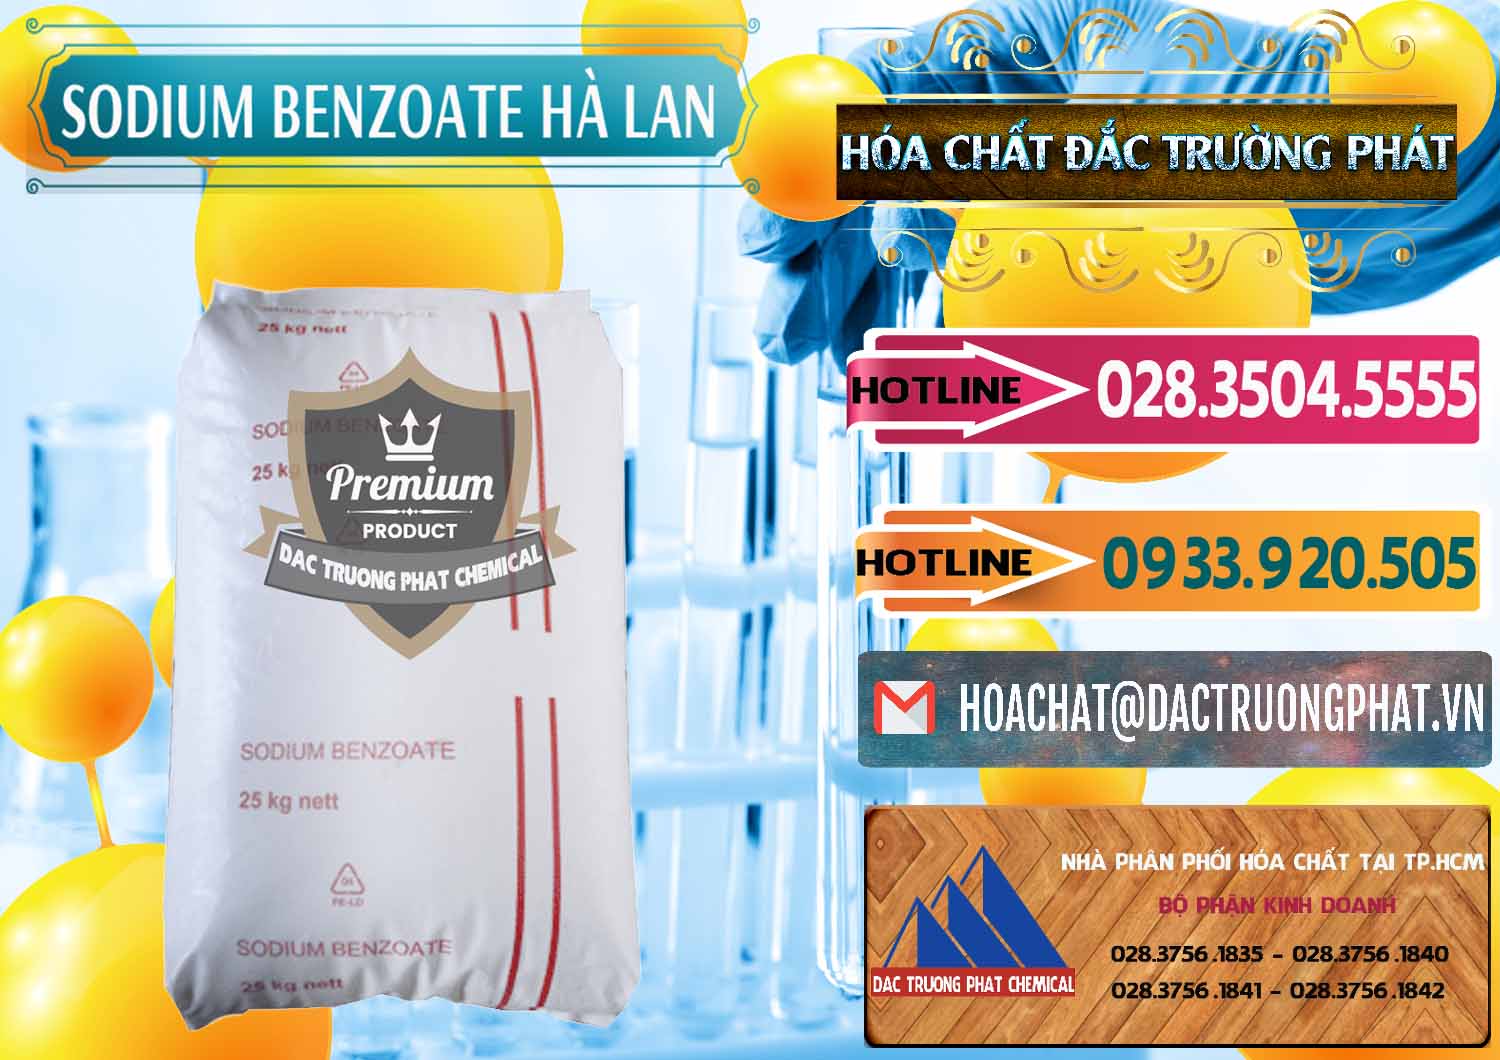 Chuyên bán & cung cấp Sodium Benzoate - Mốc Bột Chữ Cam Hà Lan Netherlands - 0360 - Cung cấp ( kinh doanh ) hóa chất tại TP.HCM - dactruongphat.vn